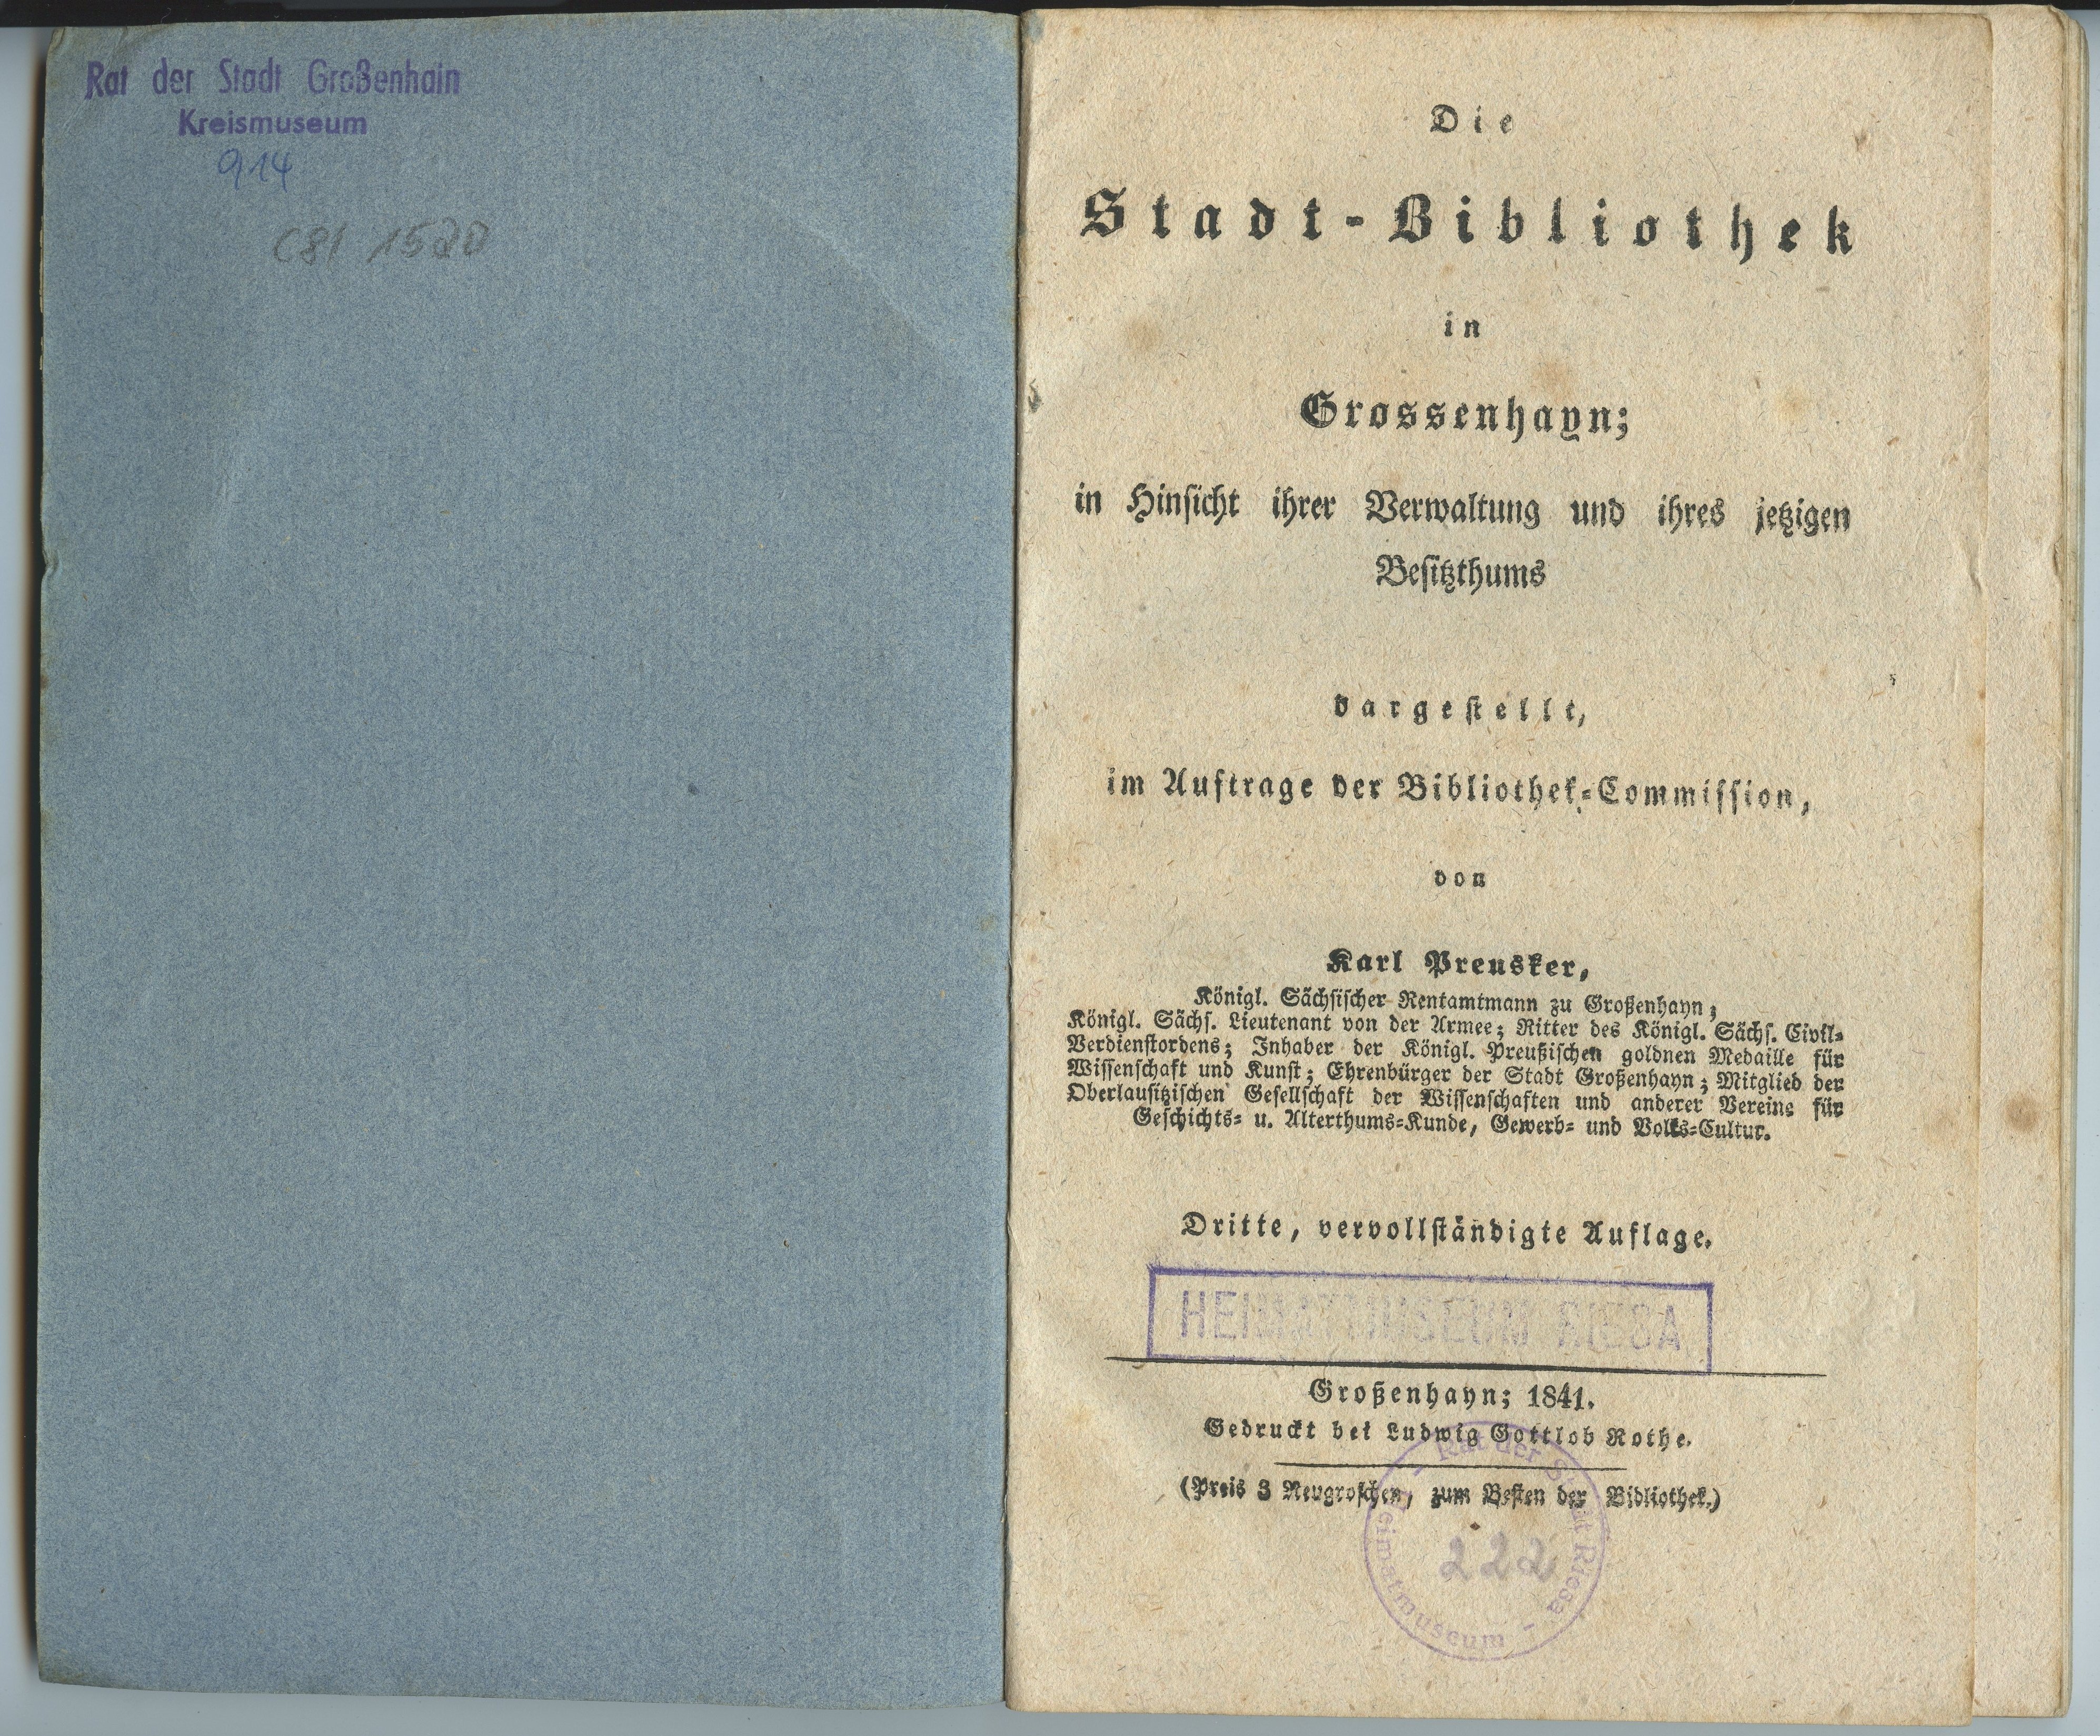 Preusker, Karl: Die Stadt-Bibliothek in Grossenhayn [...], 3. Auflage 1841 (Museum Alte Lateinschule CC BY-NC-SA)